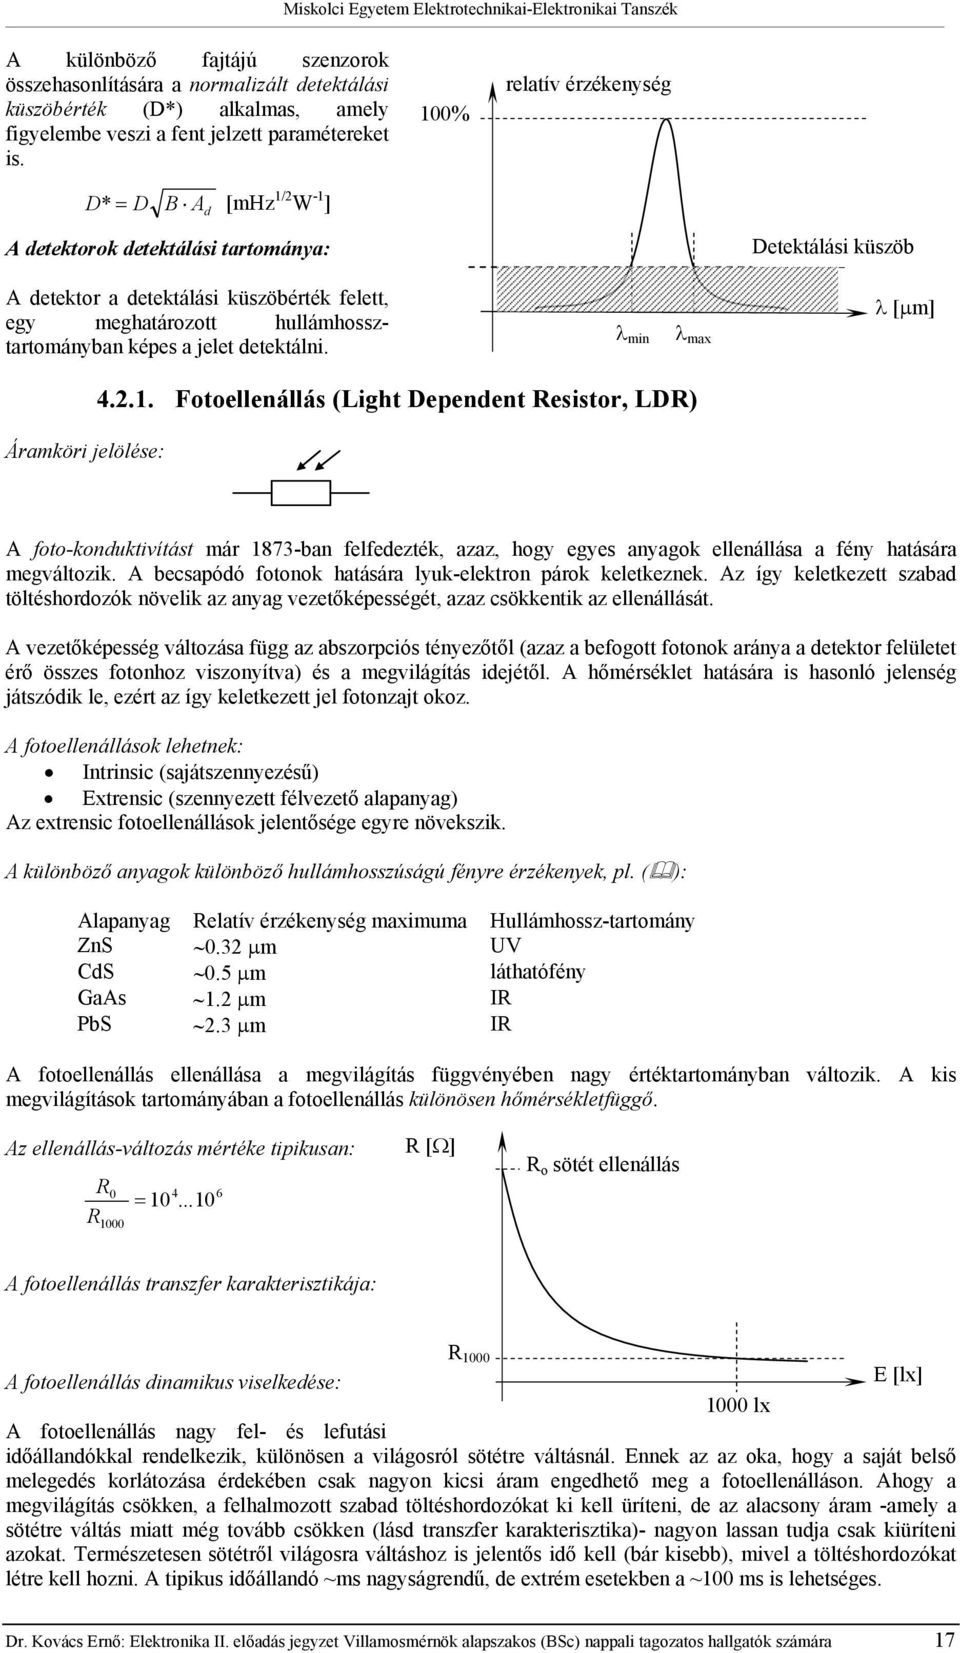 λ min λ max λ [µm] Áramköri jelölése: 4.2.1. Fooellenállás (Ligh Dependen esisor, LD) A foo-kondukivíás már 1873-ban felfedezék, azaz, hogy egyes anyagok ellenállása a fény haására megválozik.